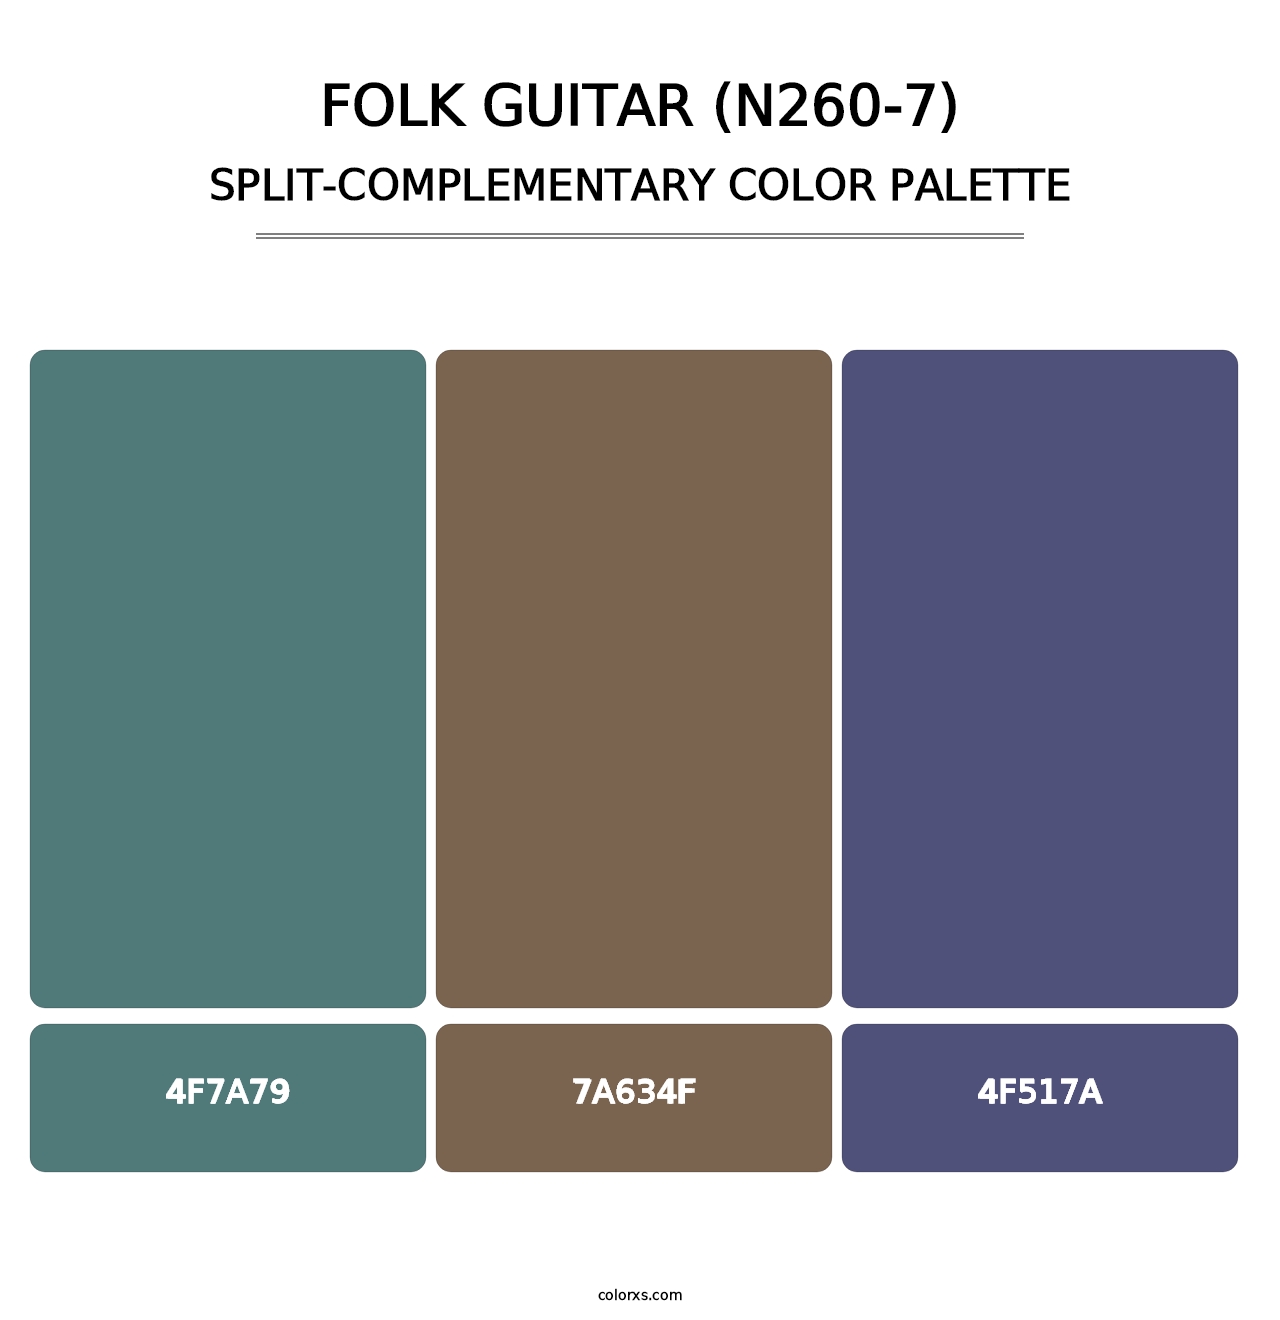 Folk Guitar (N260-7) - Split-Complementary Color Palette